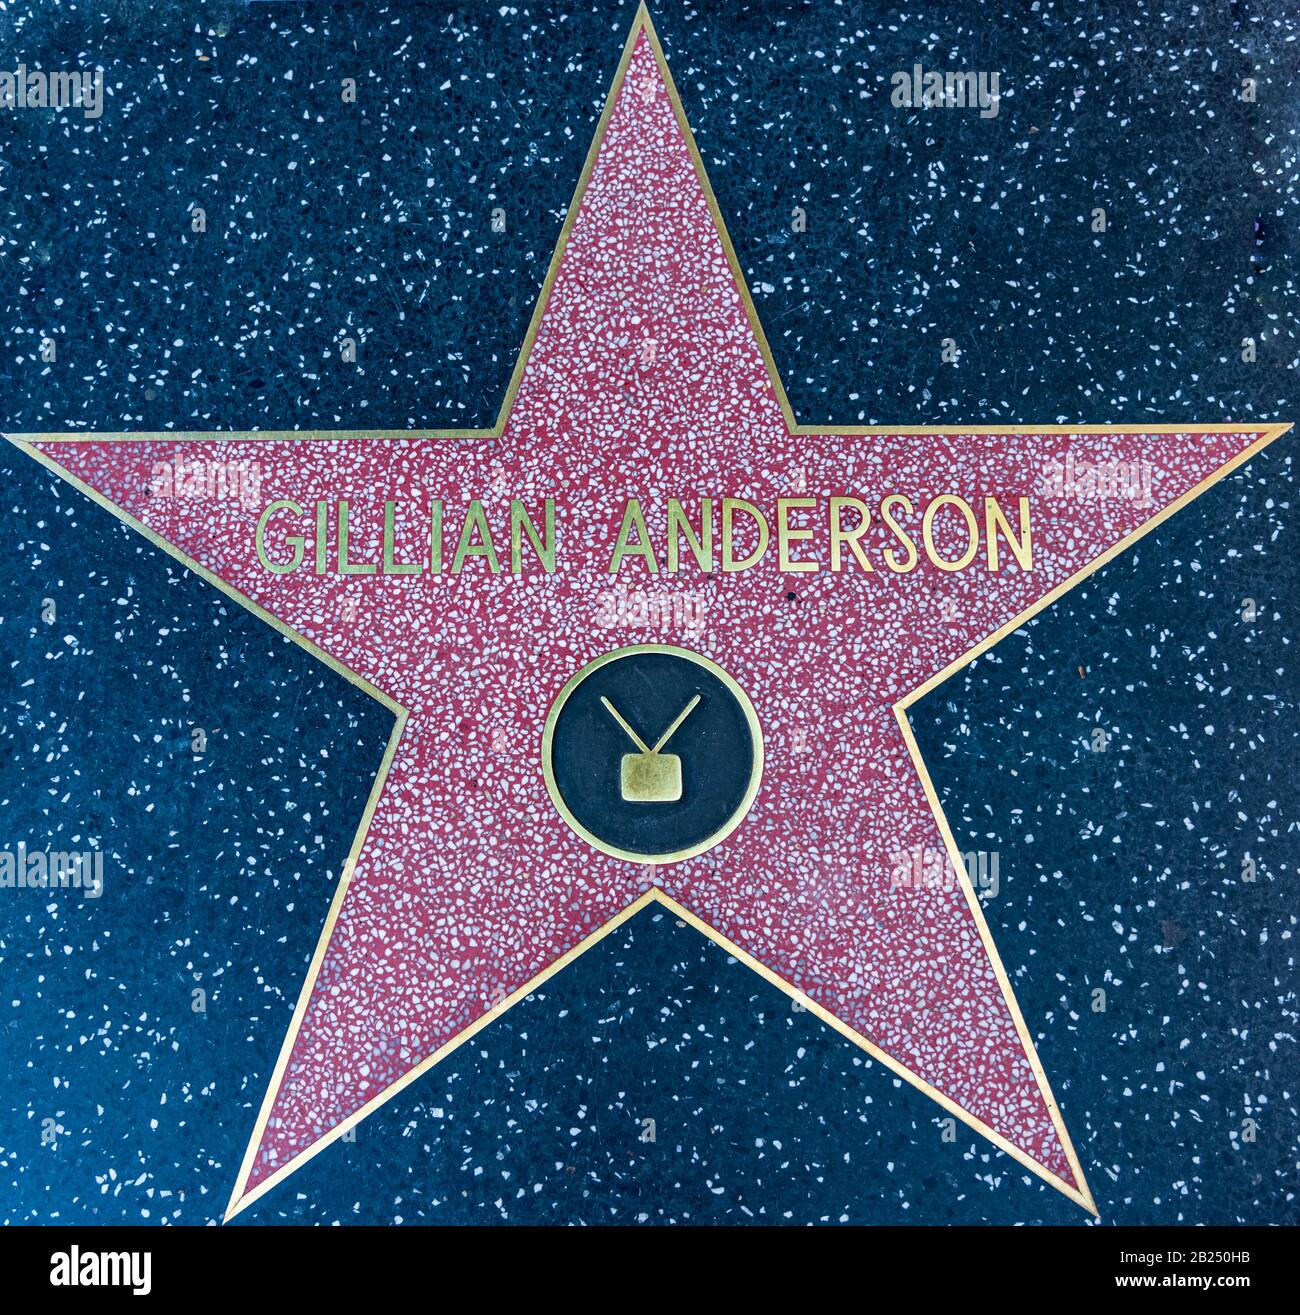 Los Angeles, Kalifornien - 8. Februar 2019: Der Star von Gillian Anderson im Walk of Fame Sidewalk in Hollywood. Stockfoto